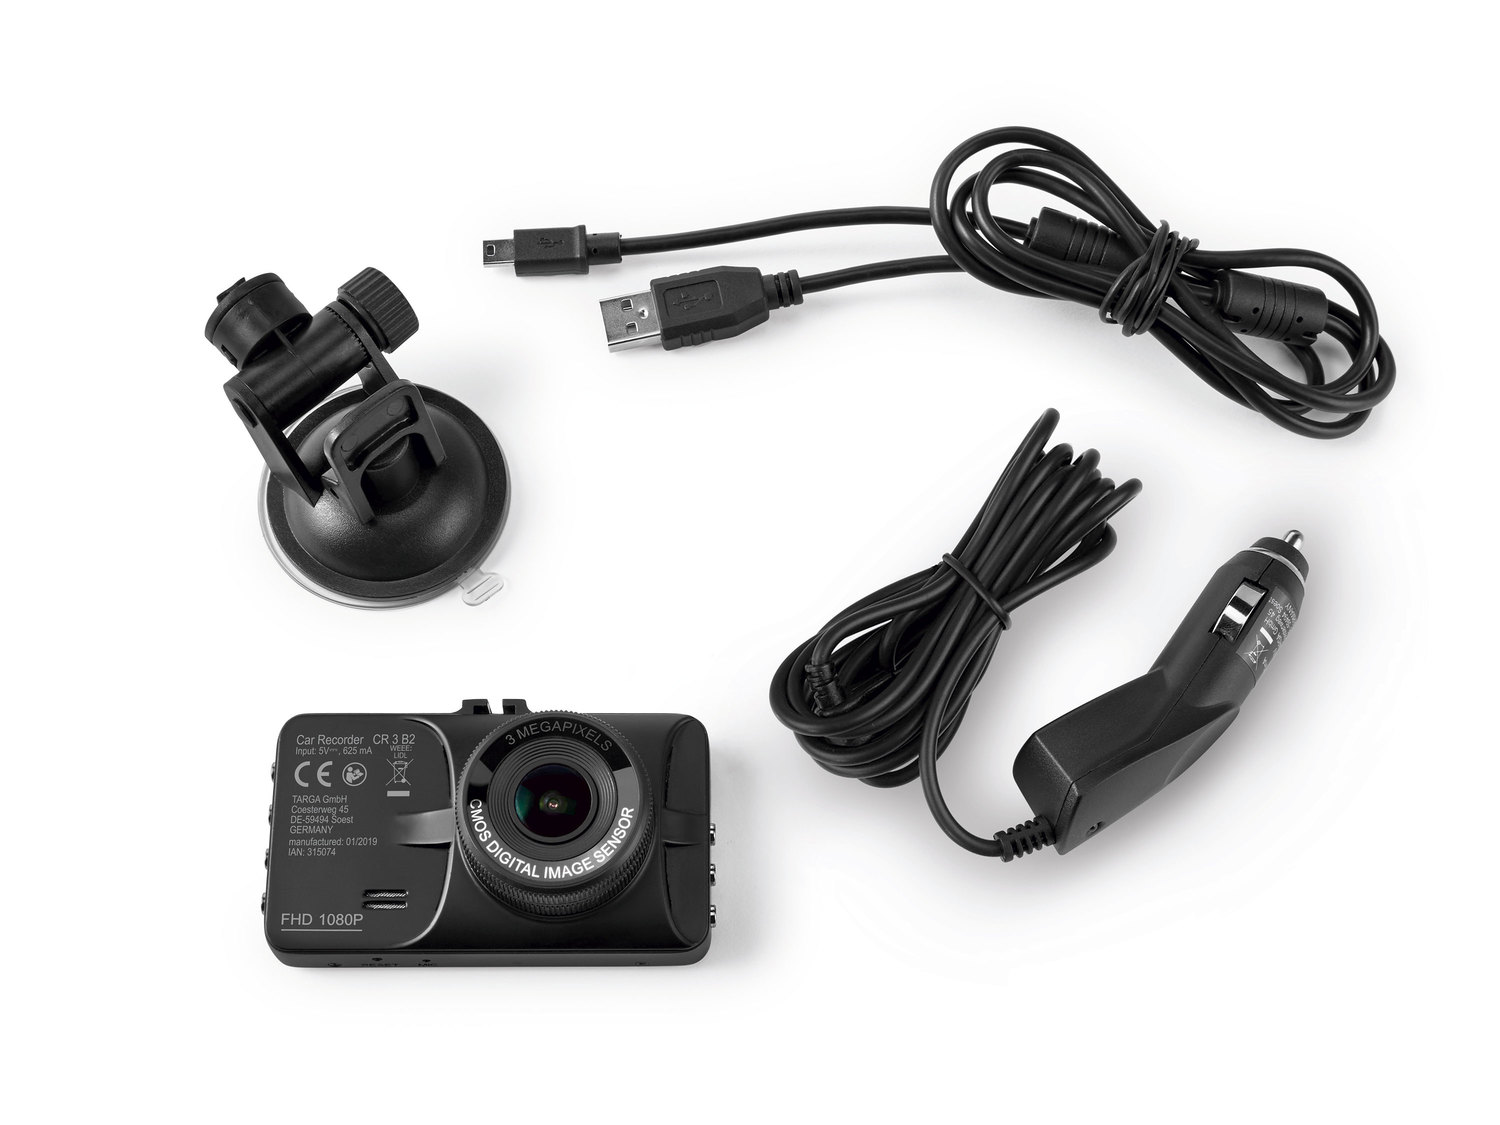 Kamera samochodowa Car Recorder CR 3 B2 z wyświetlaczem 2,9˝ 3 lata gwarancji, ...